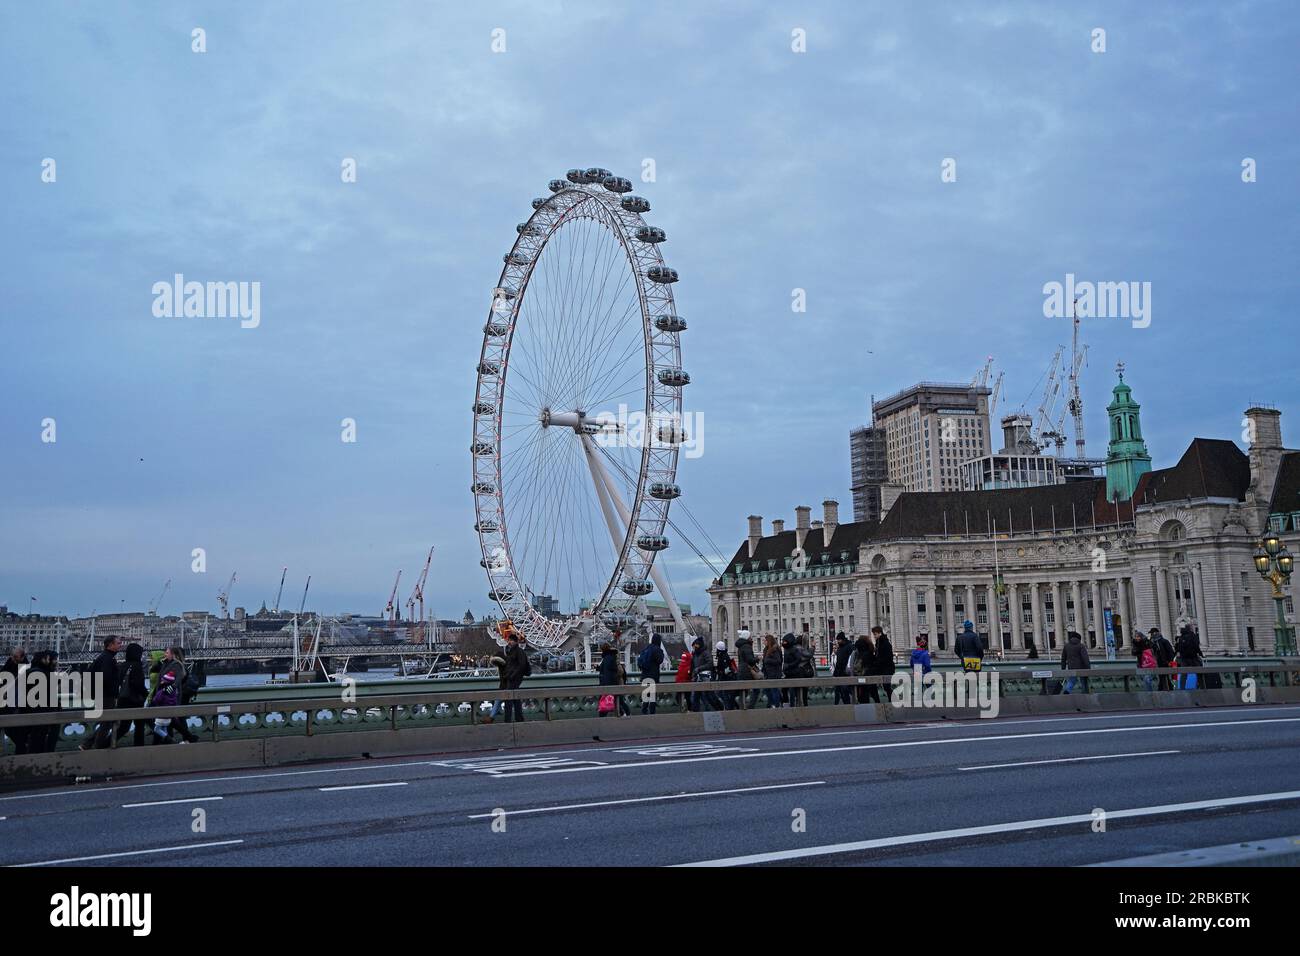 Äußere europäische Architektur und Design des London Eye Riesenrads, Europas höchstes freitragendes Aussichtsrad an der Themse - Vereinigtes Königreich Stockfoto